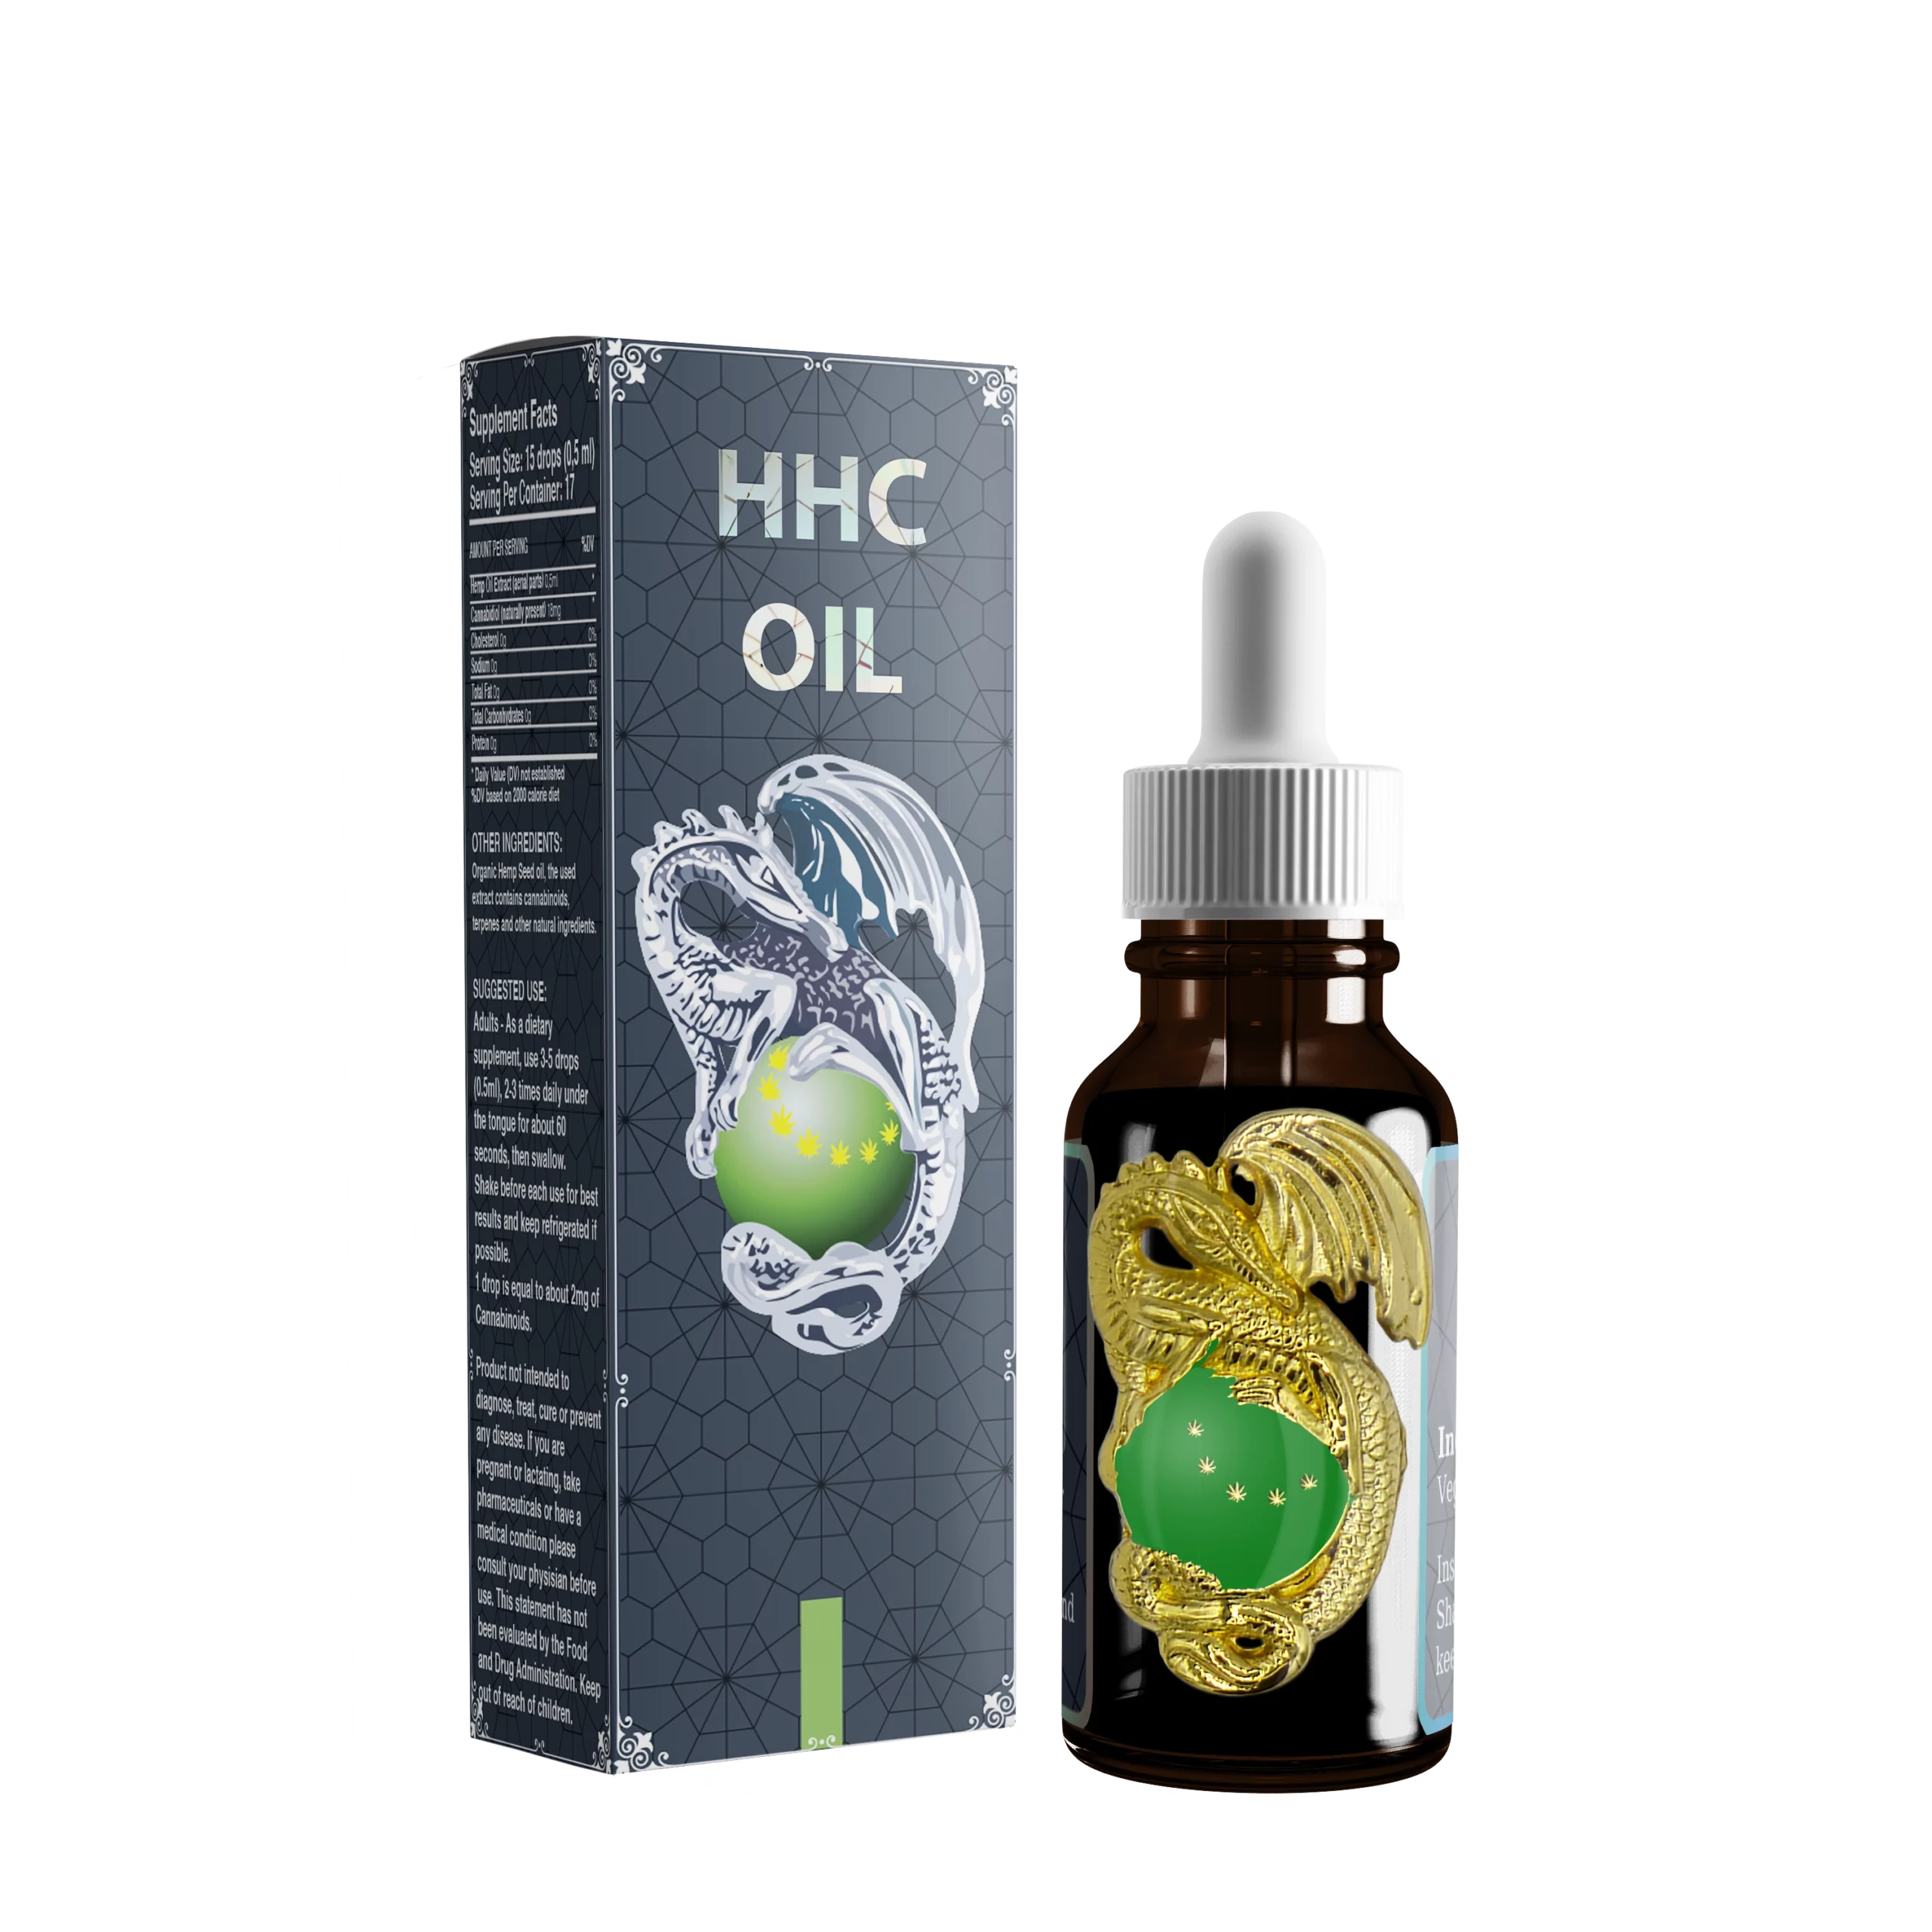 HHC Oil